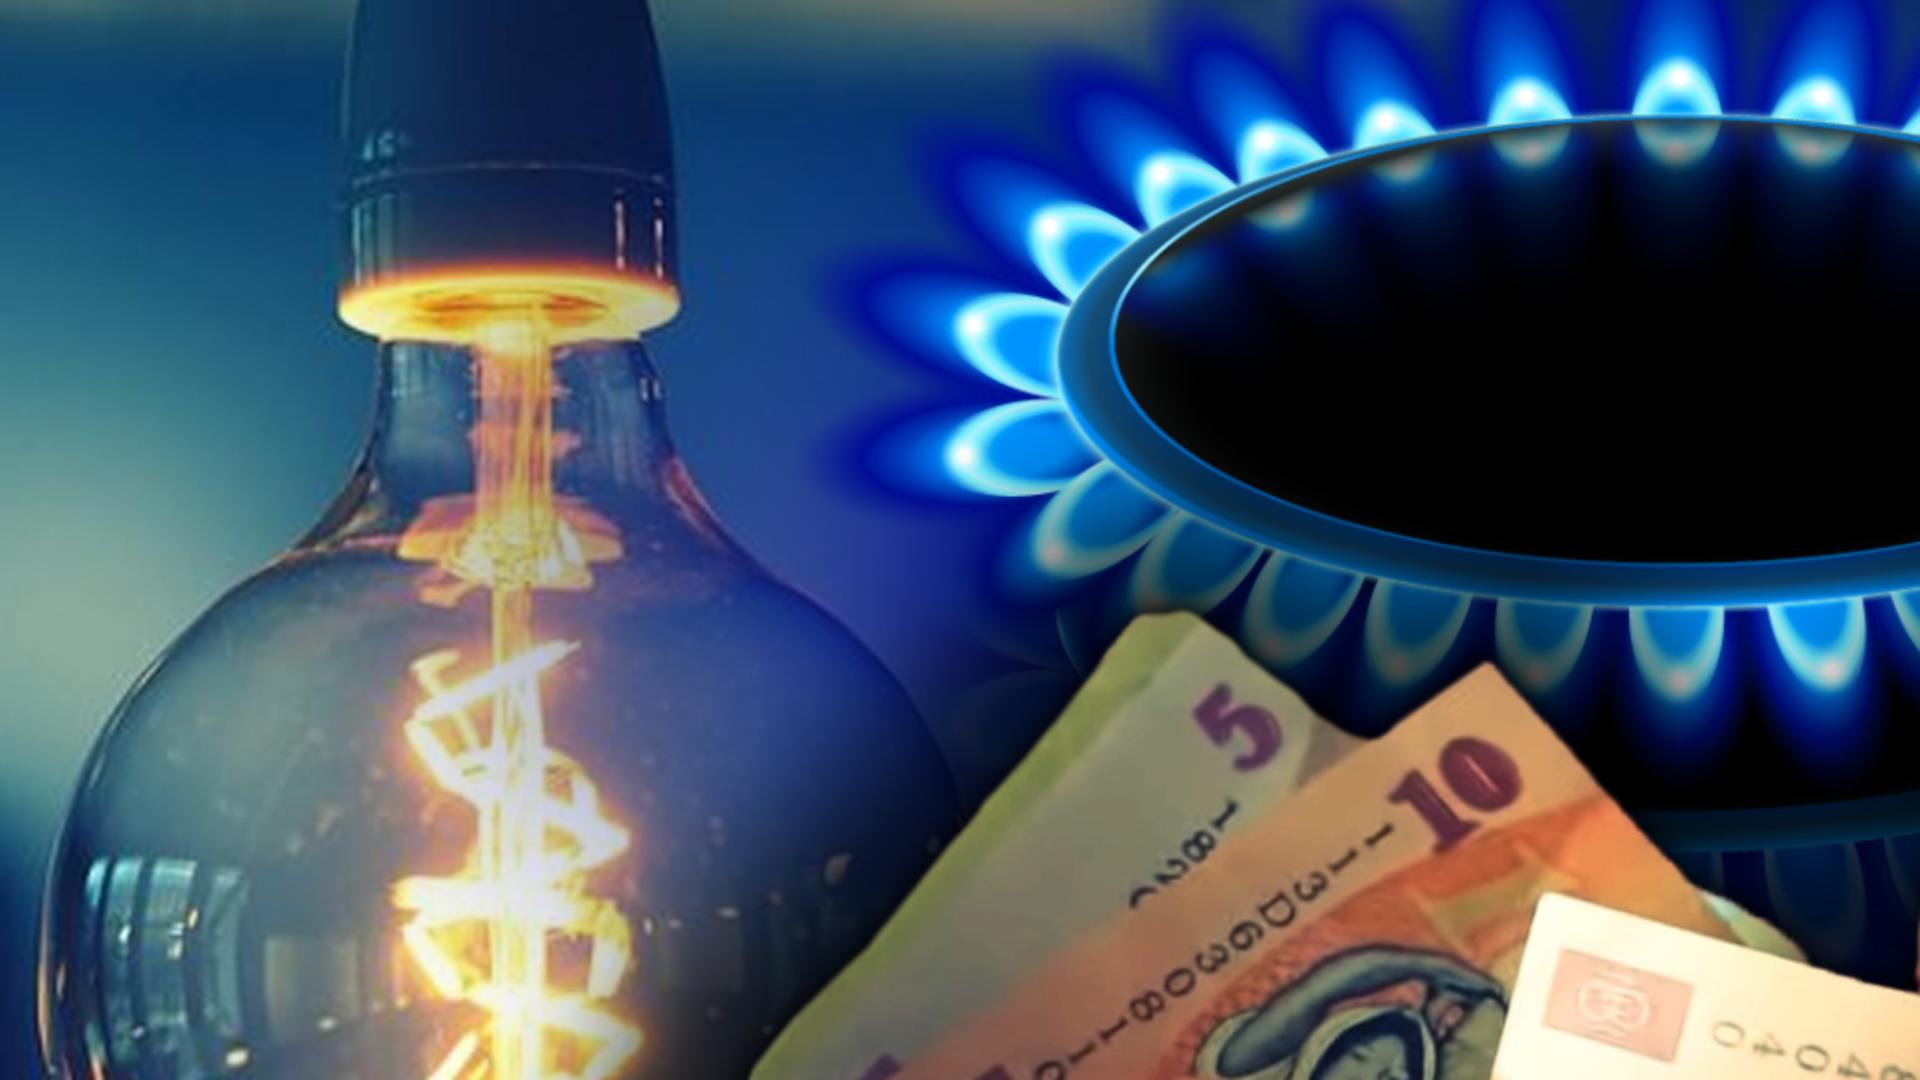 BLOCAJ în criza facturilor uriașe! Guvernul vrea suprataxarea profiturilor din energie - Discuții cruciale în coaliție joi, 18 august